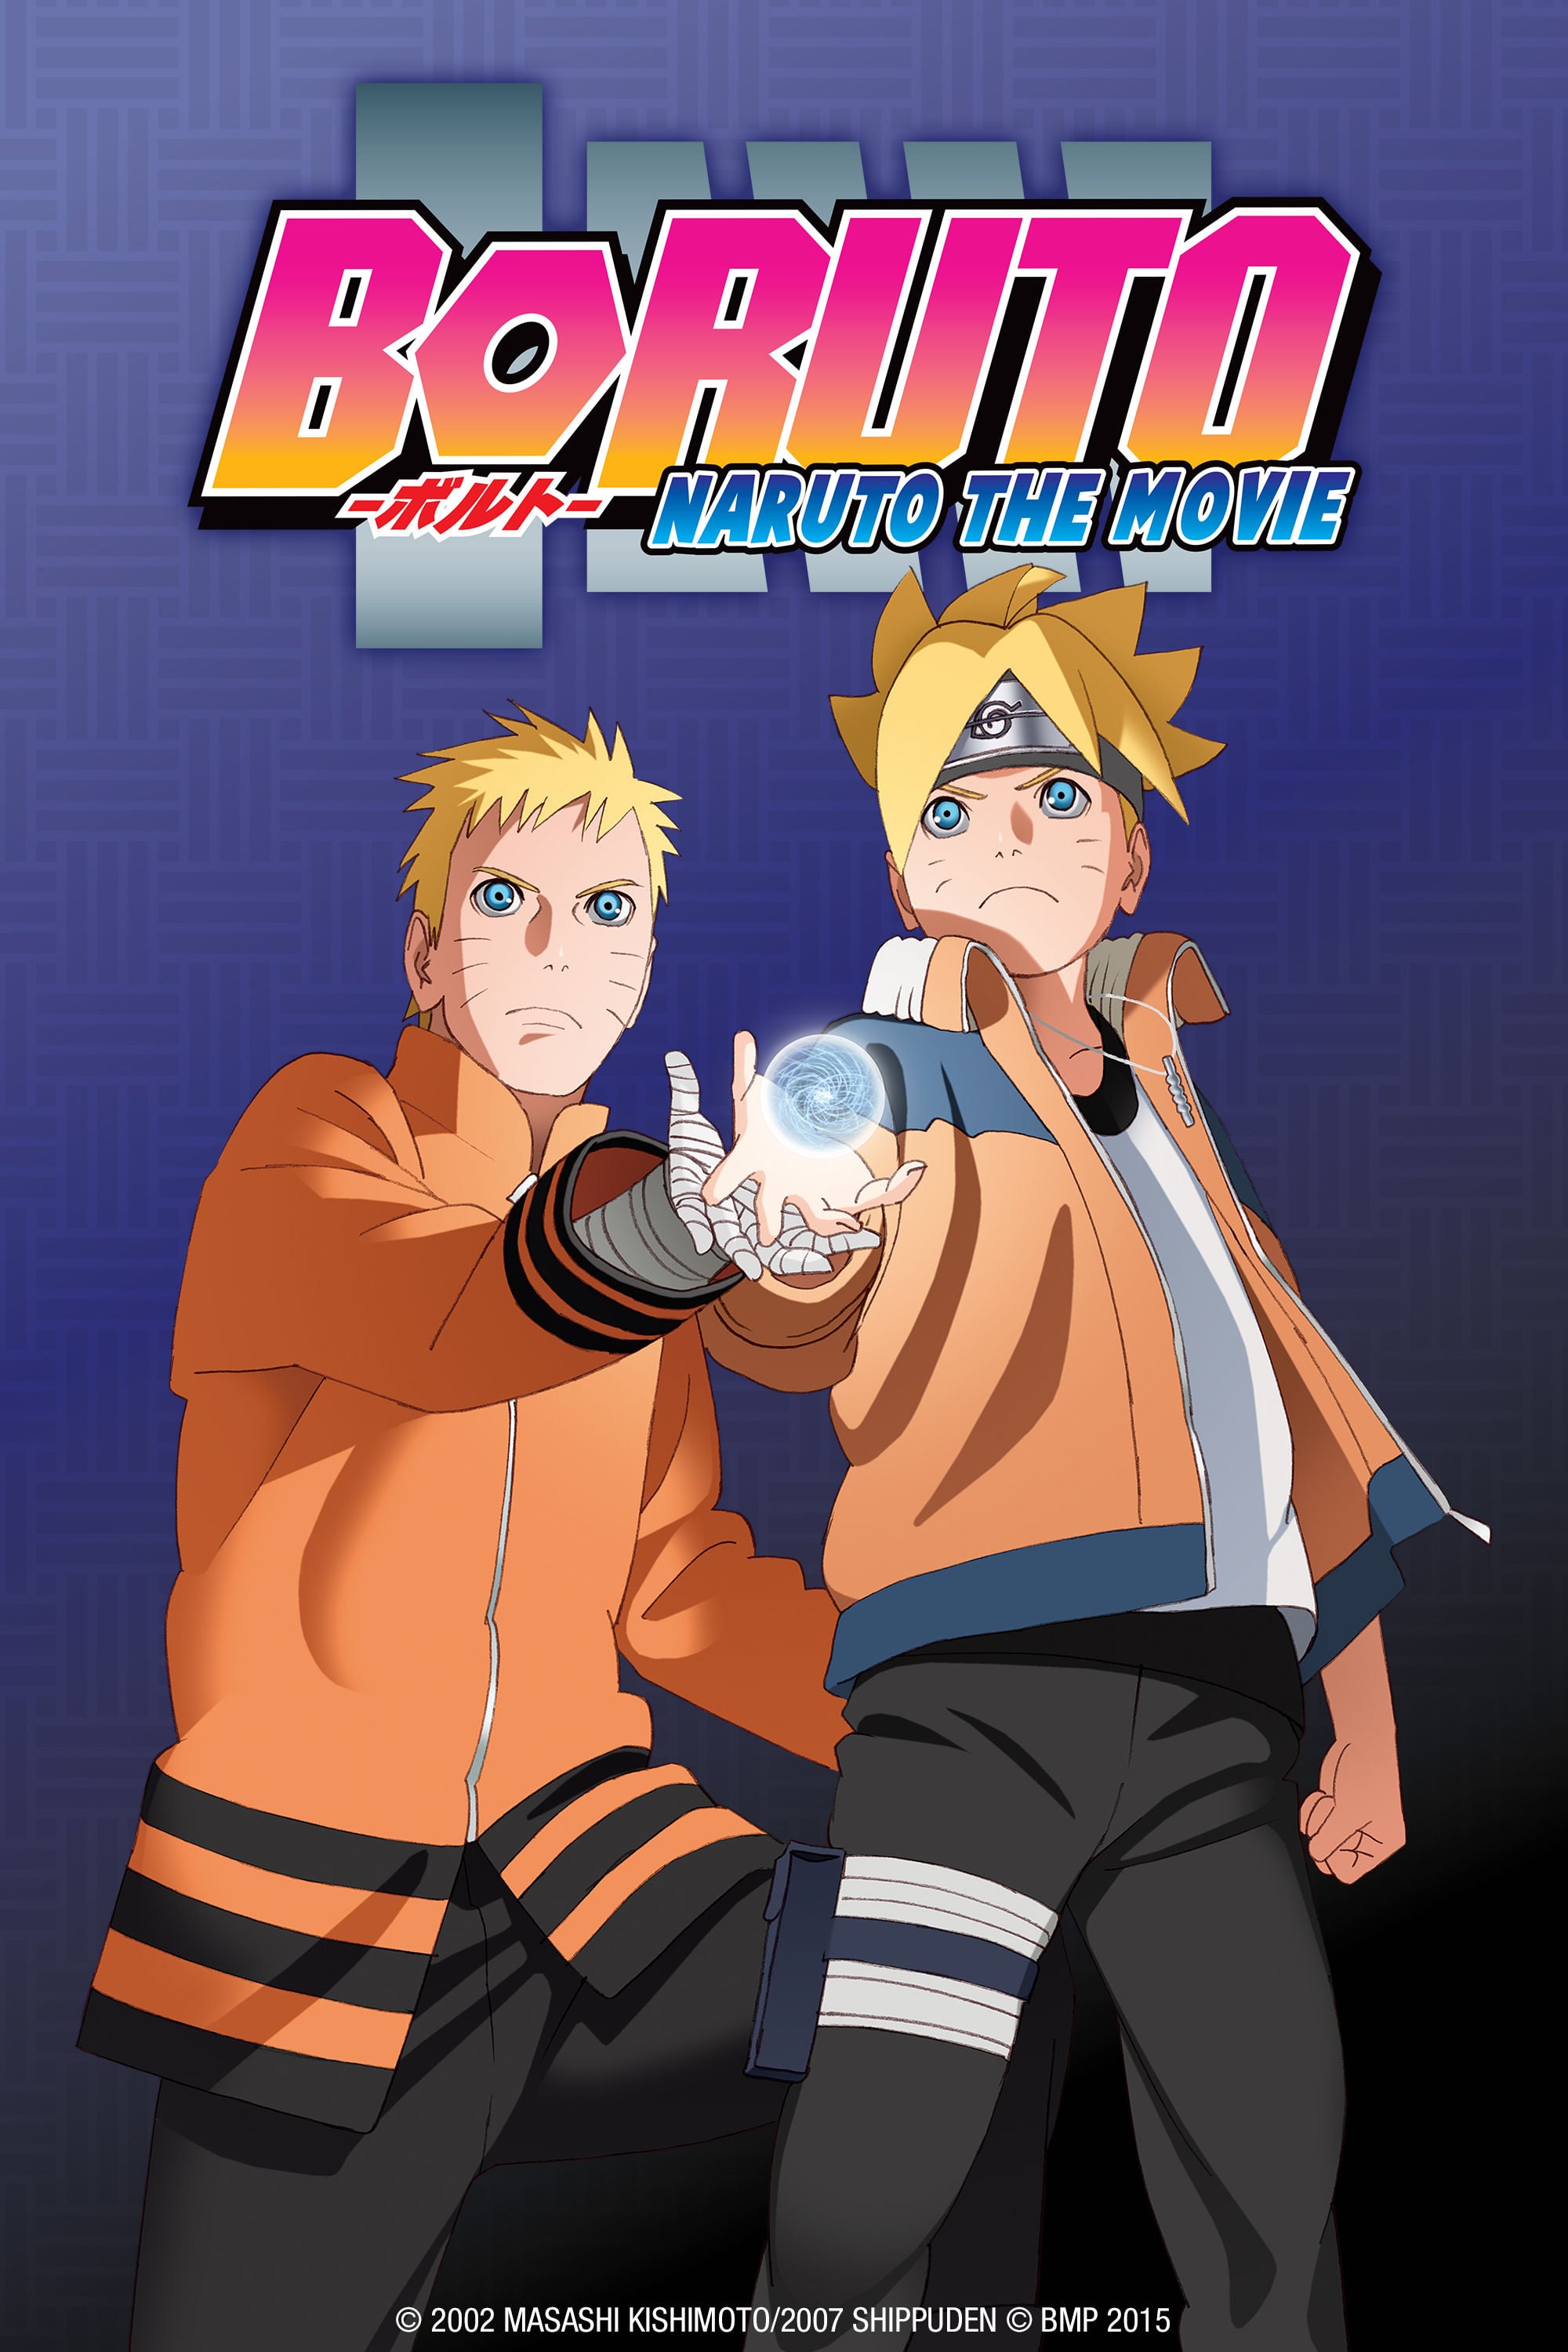 Boruto: Naruto the Movie Picture